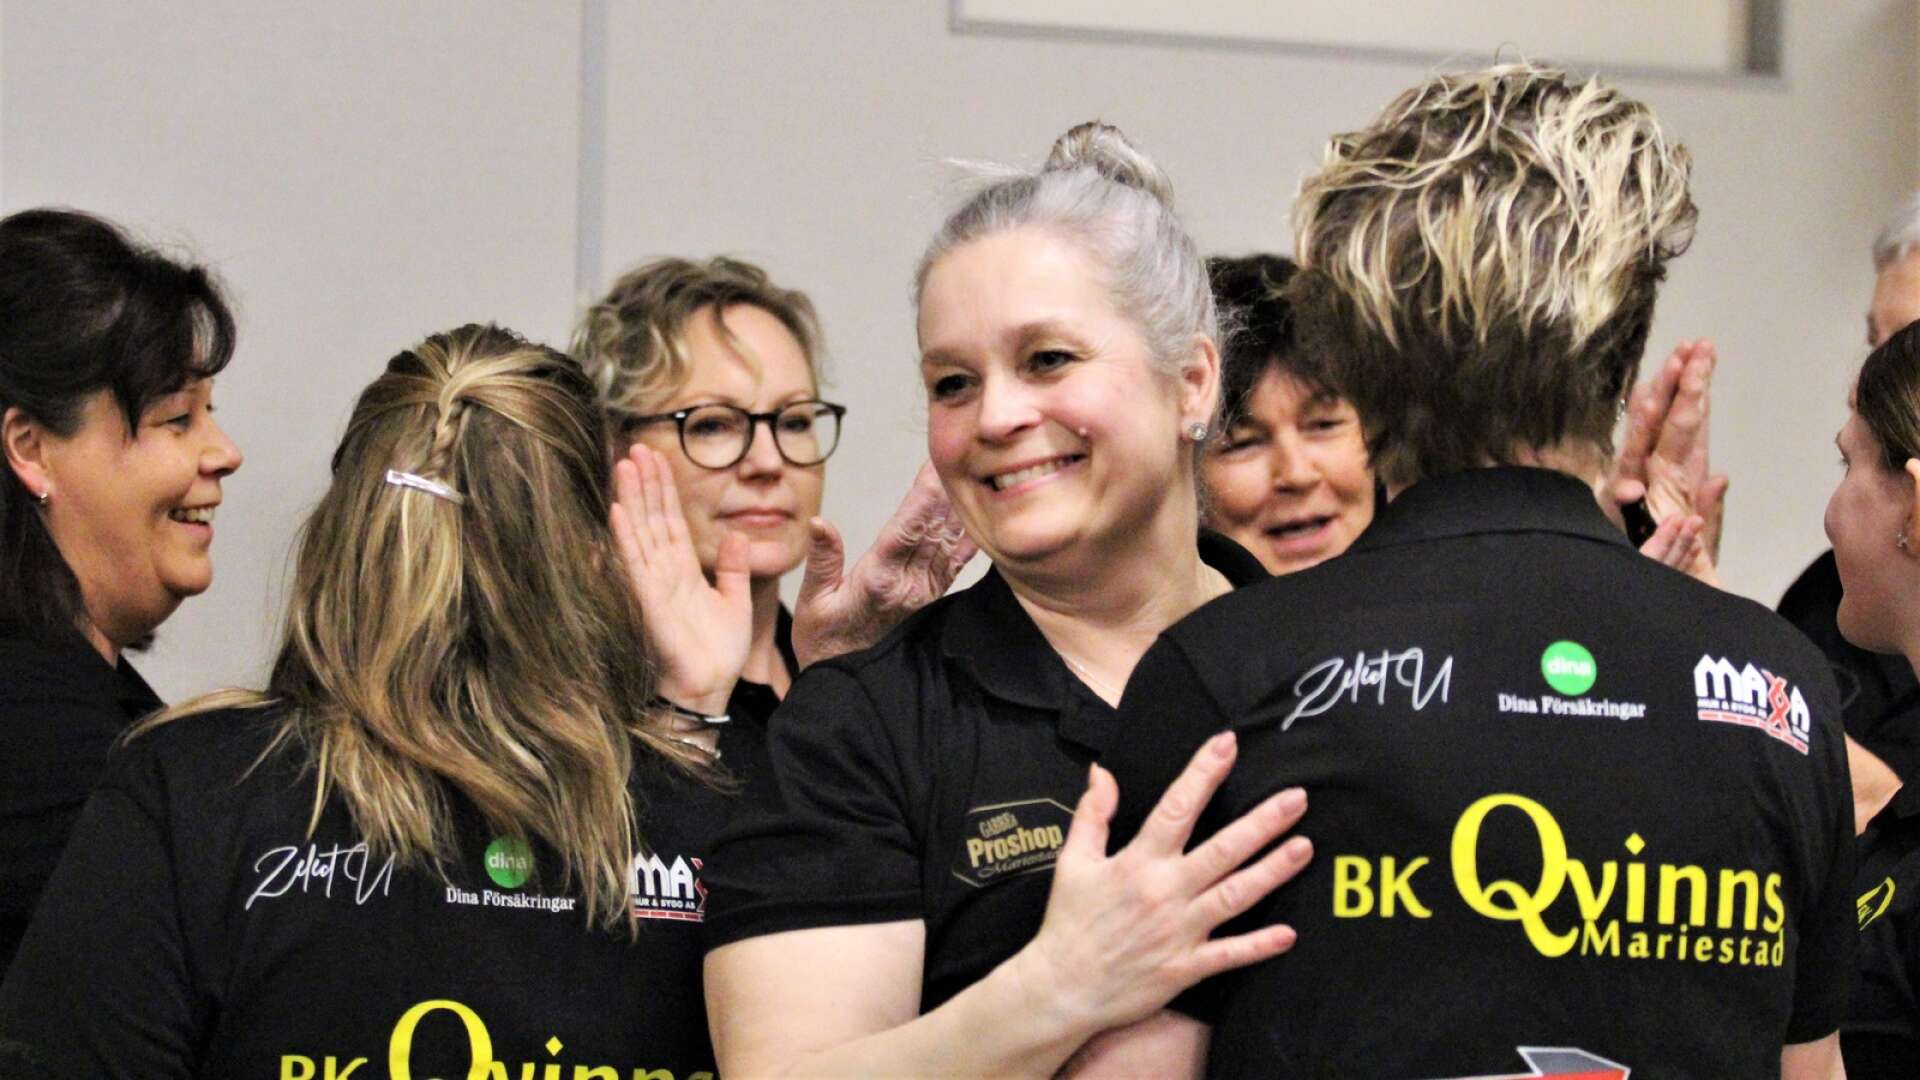 Ulrika Larsson och BK Qvinns fick fira seger hemma mot Team X-Calibur. (ARKIVBILD)